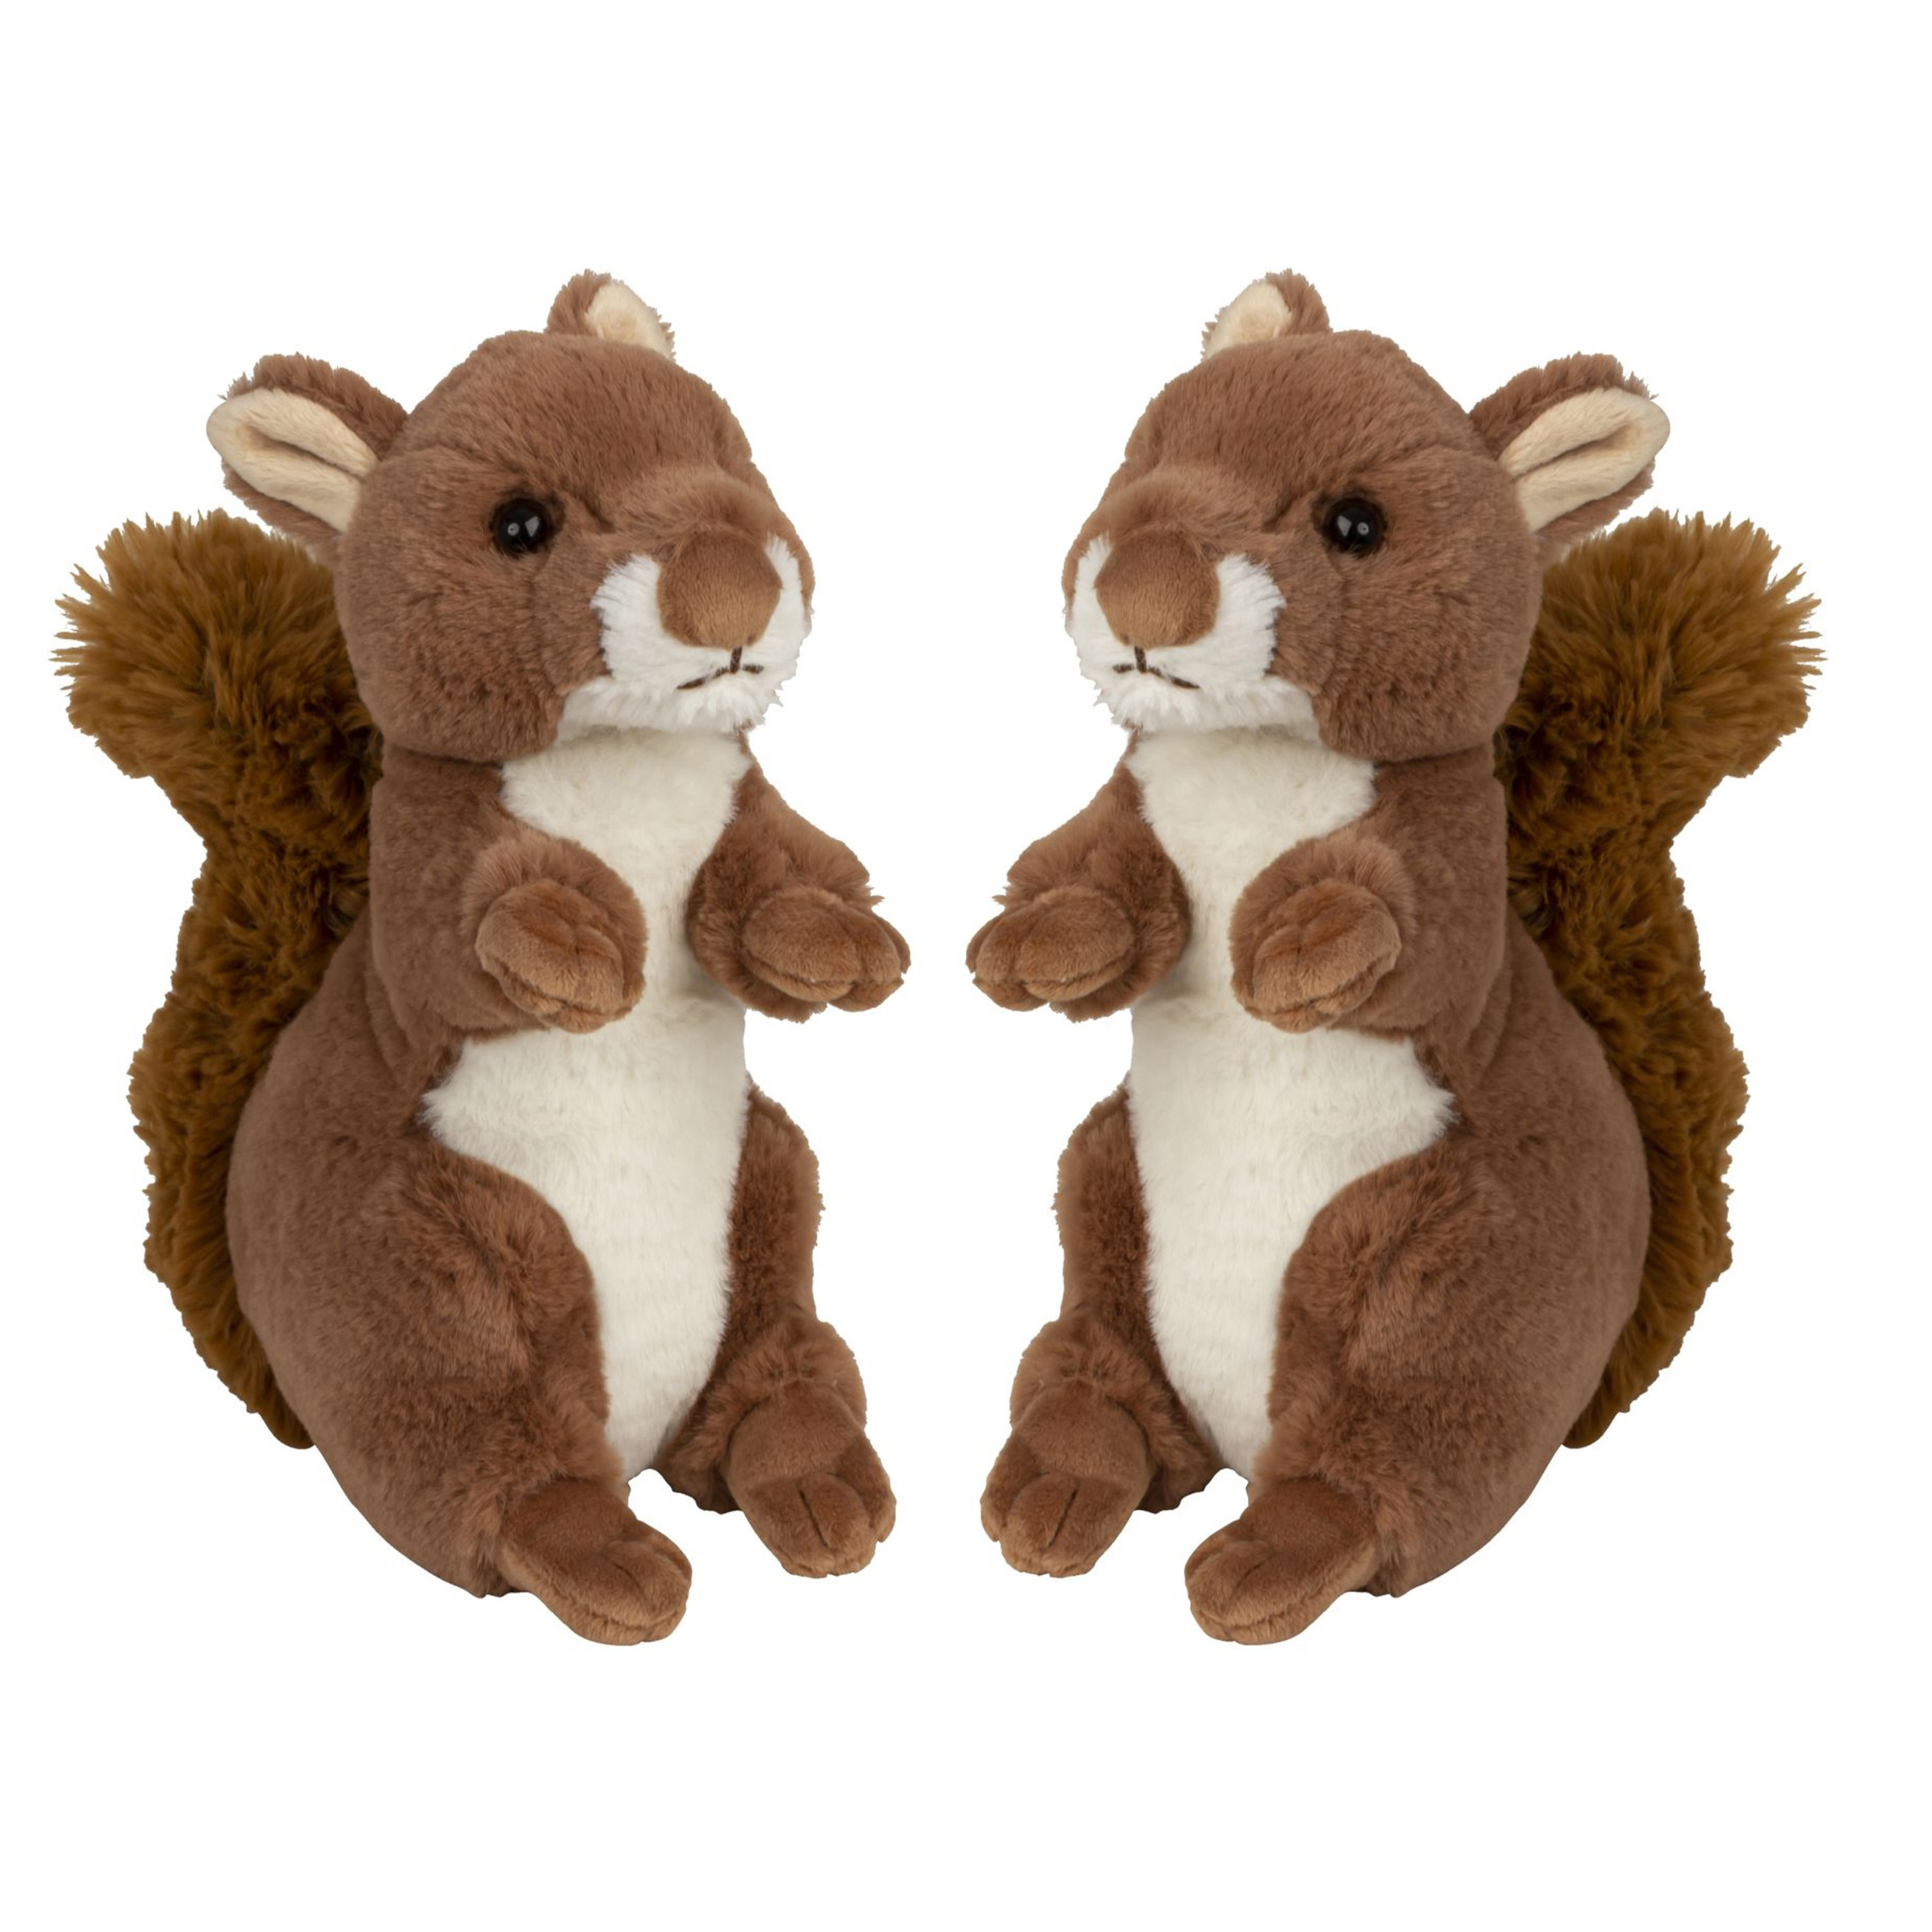 Eekhoorn knuffel van zachte pluche 2x 22 cm dieren knuffels voor kinderen